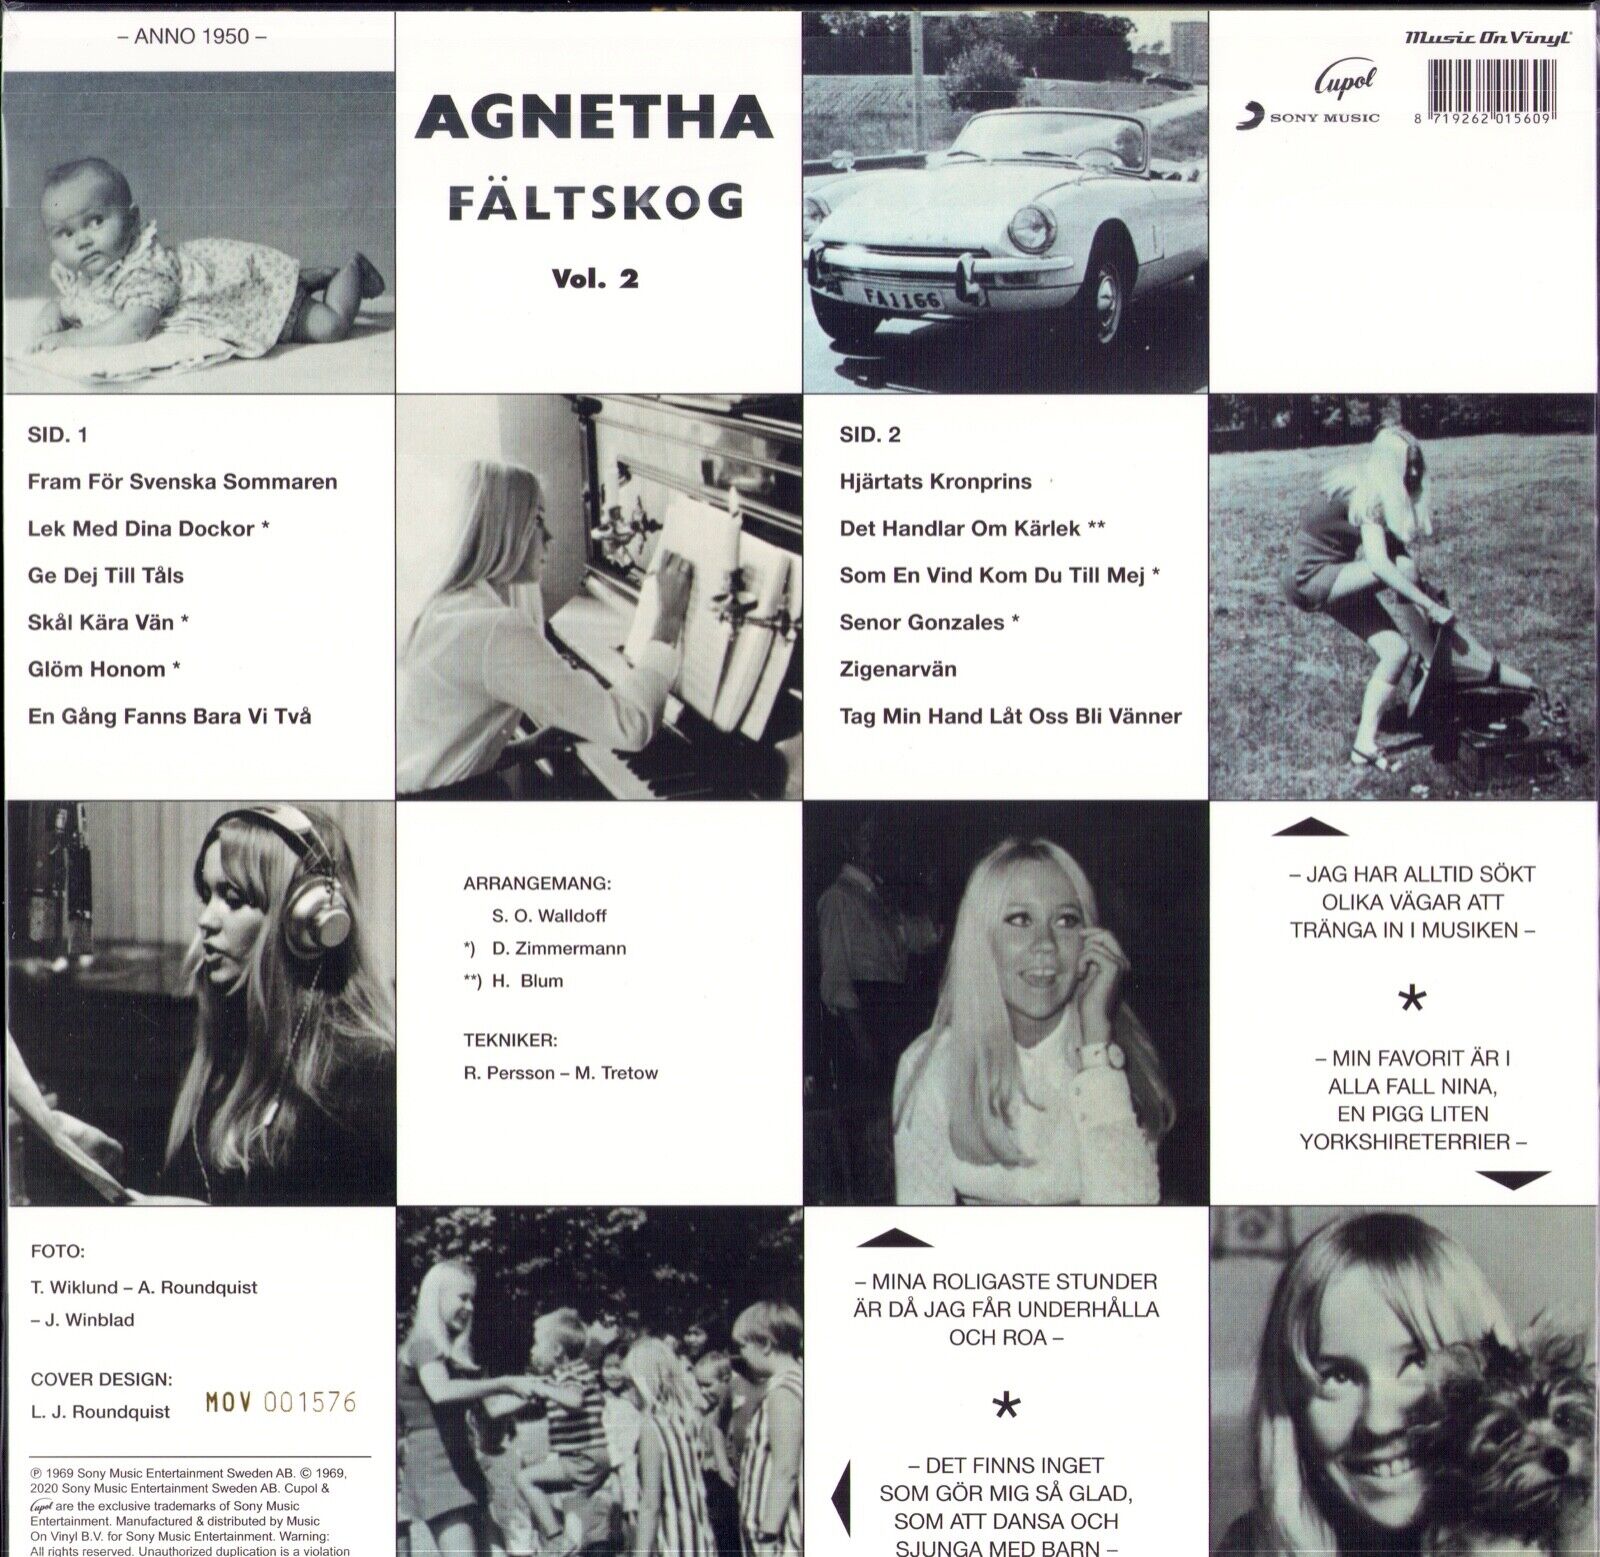 Agnetha Fältskog - Agnetha Fältskog Vol. II Blue Marbled Vinyl LP Limited Edition